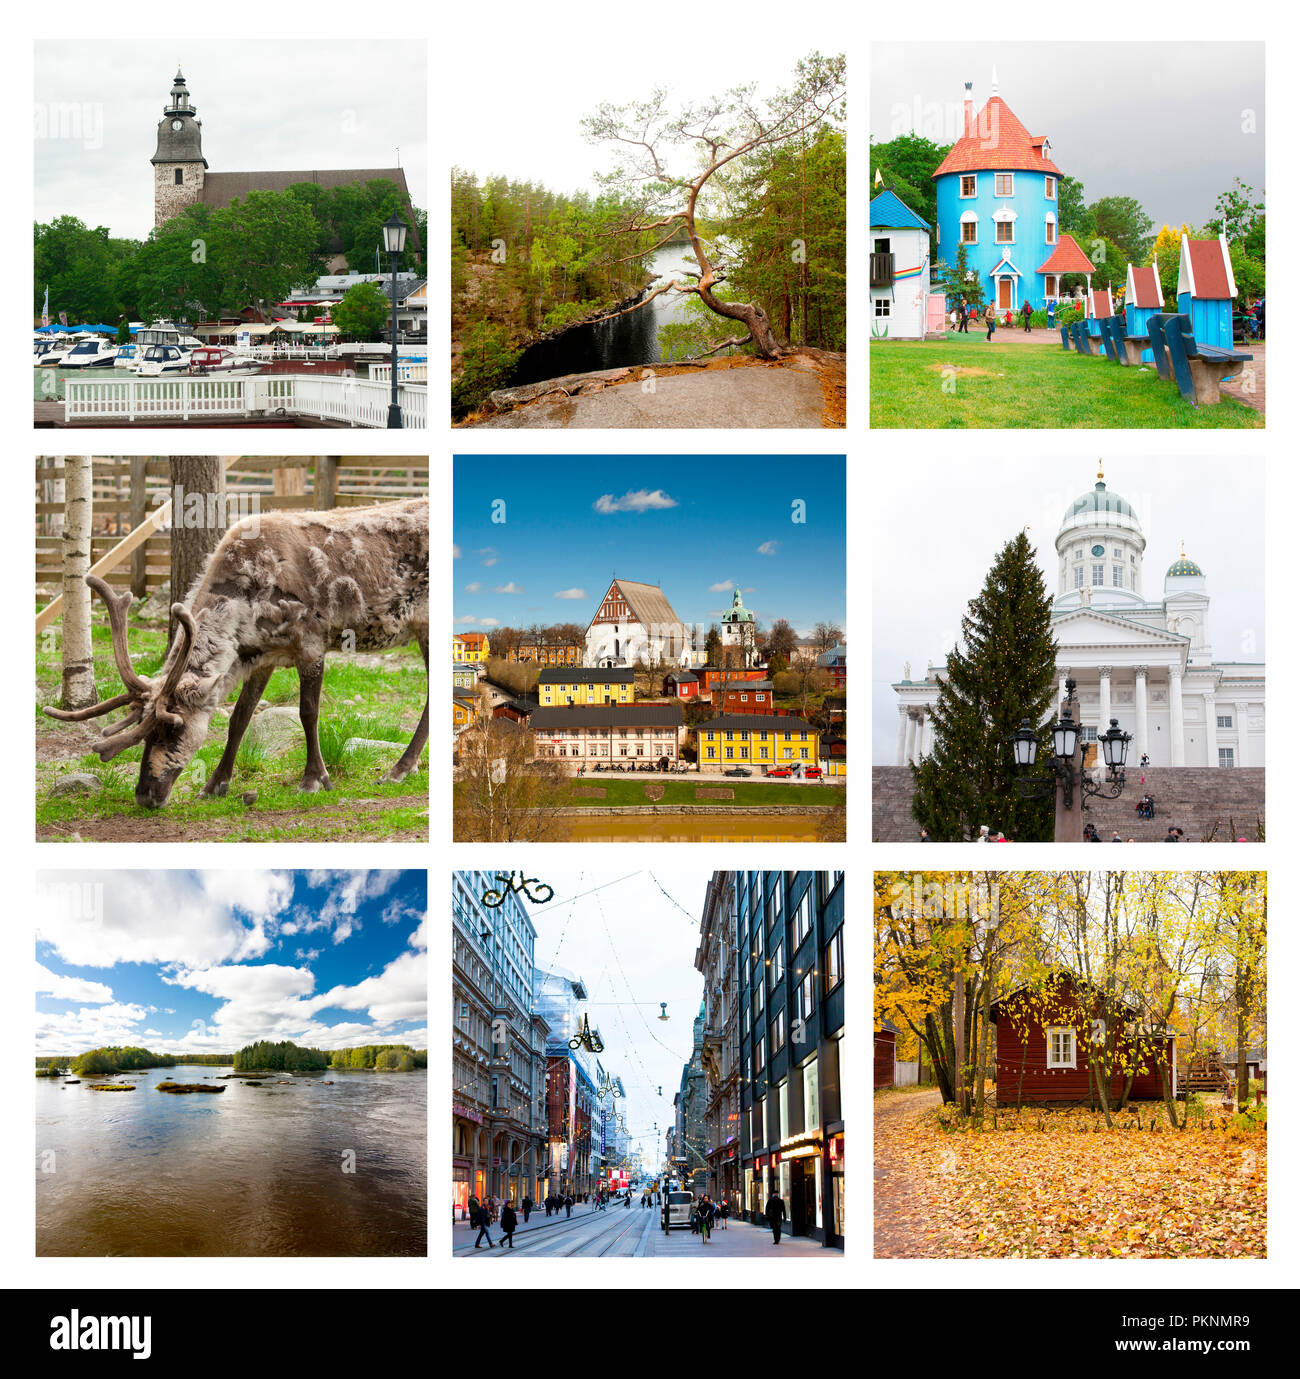 Impressionen aus Finnland, Collage der Bilder. 17. August 2018 Kouvola, Finnland Stockfoto